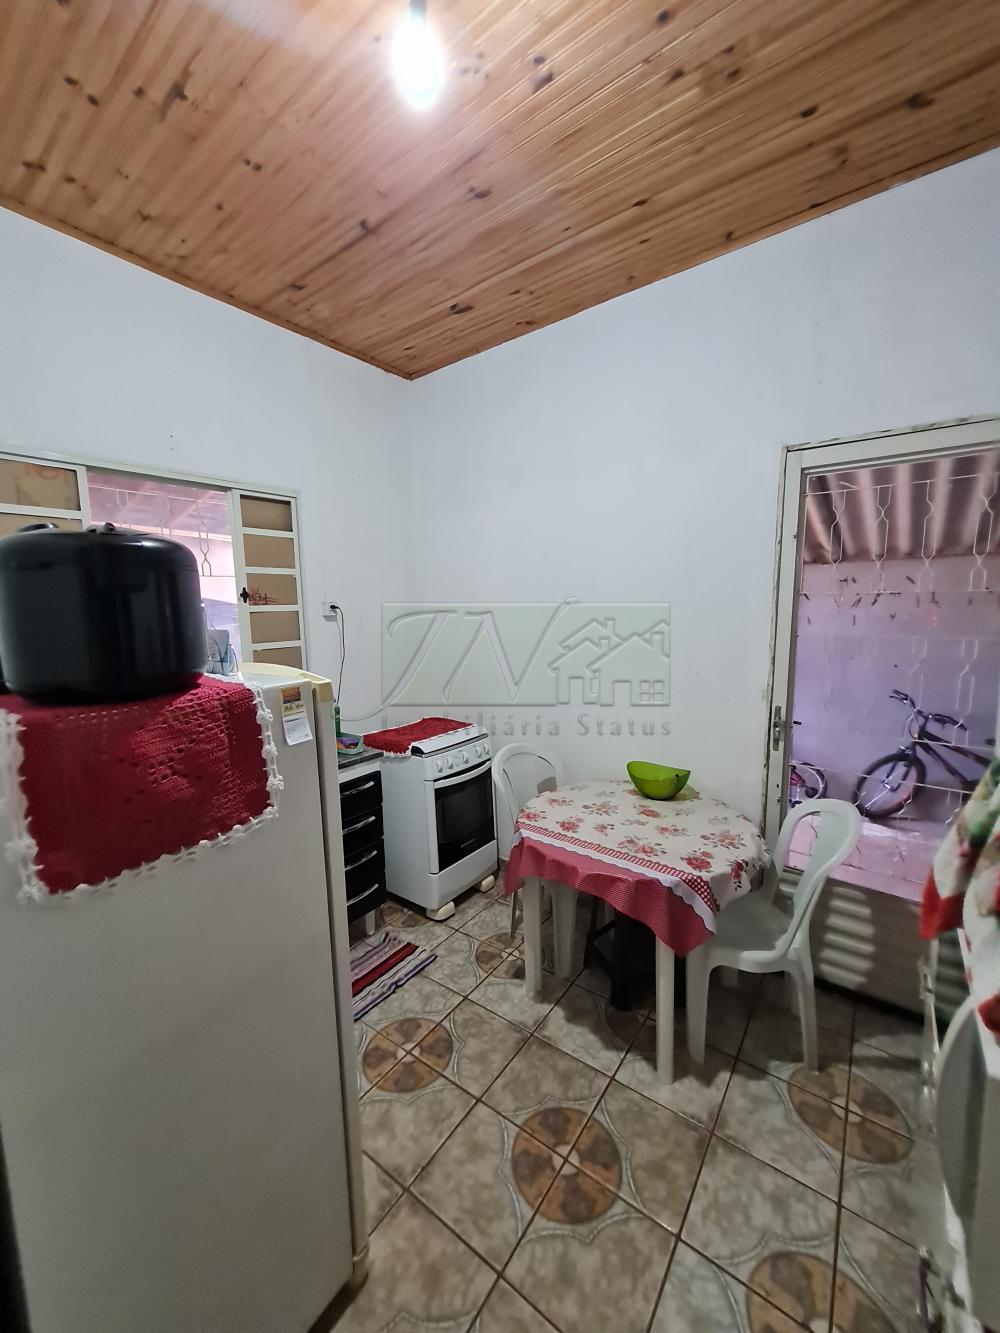 Comprar Residenciais / Casas em Espírito Santo do Turvo R$ 150.000,00 - Foto 8